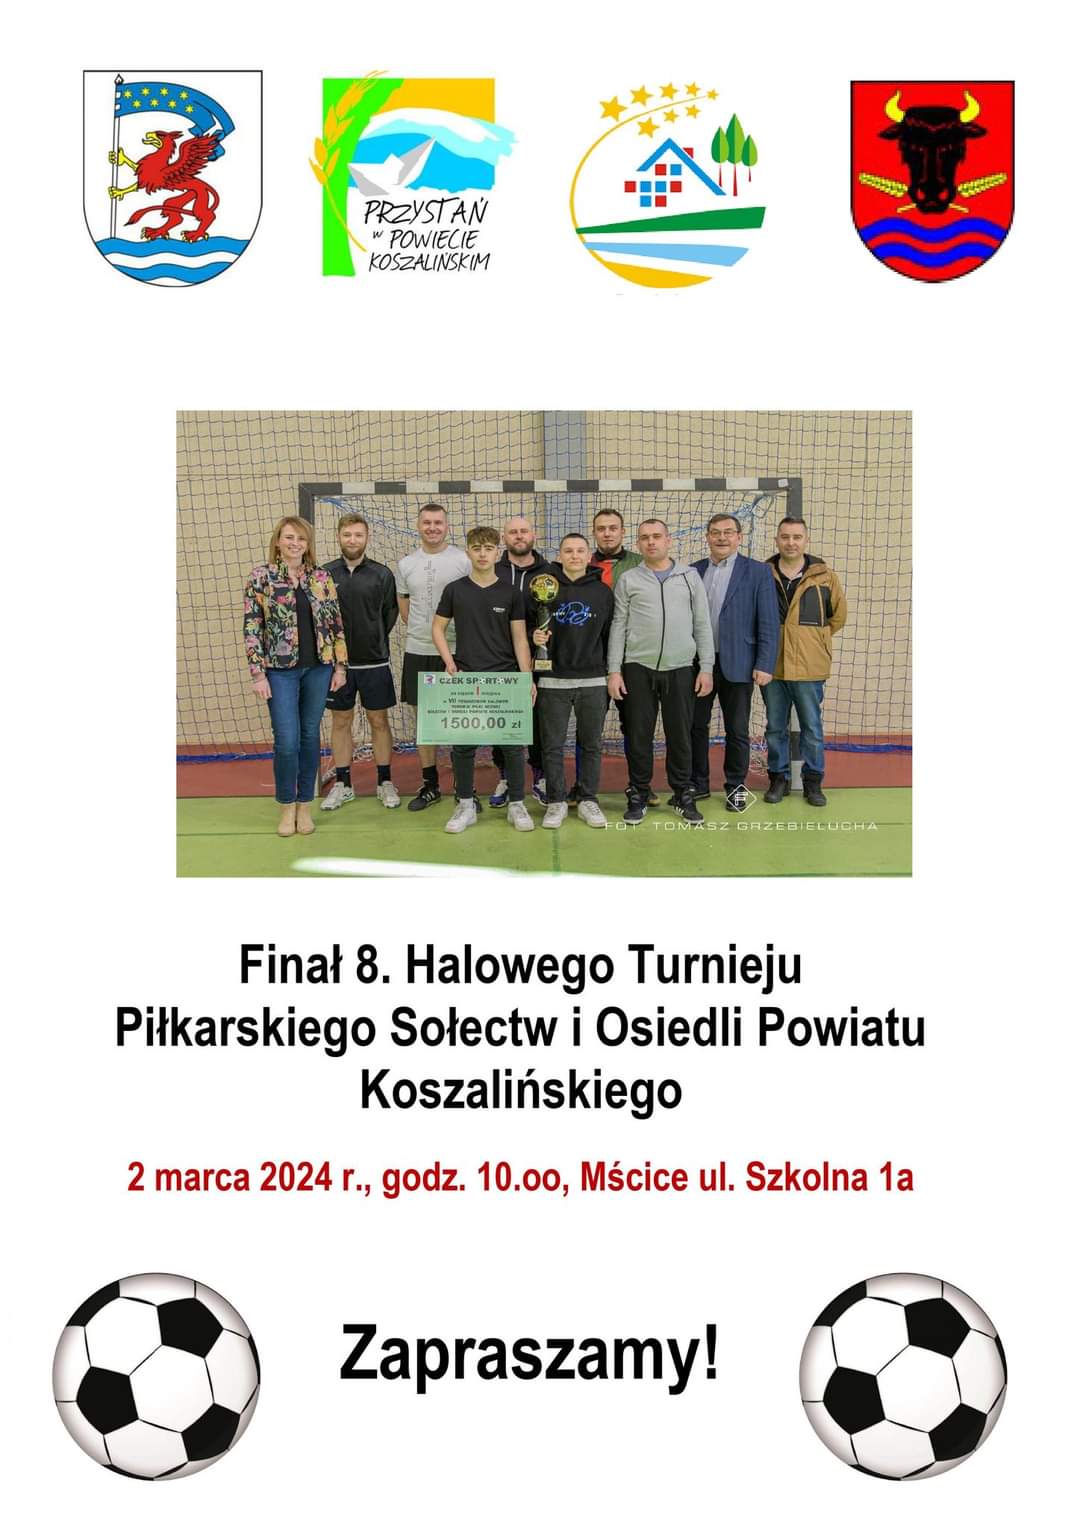 Plakat z zaproszeniem na final 8. halowego turnieju piłkarskiego sołectw i osiedli powiatu koszalińskiego 2 marca 2024 w Mścicach